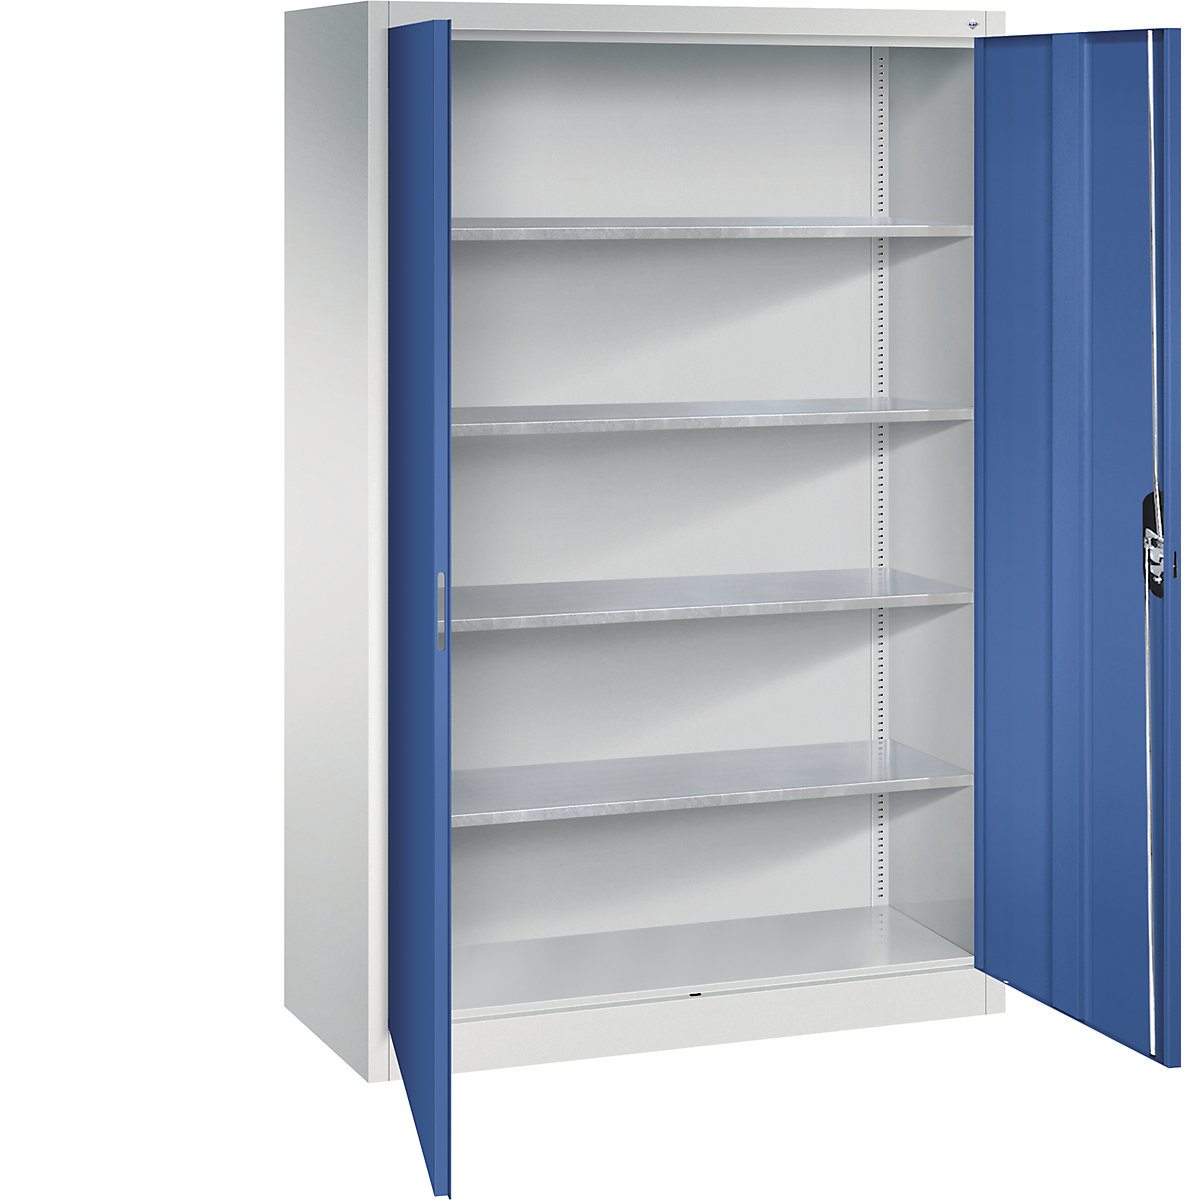 Dílenská skříň s otočnými dveřmi – C+P, v x š x h 1950 x 1200 x 500 mm, světlá šedá / enciánová modrá-8